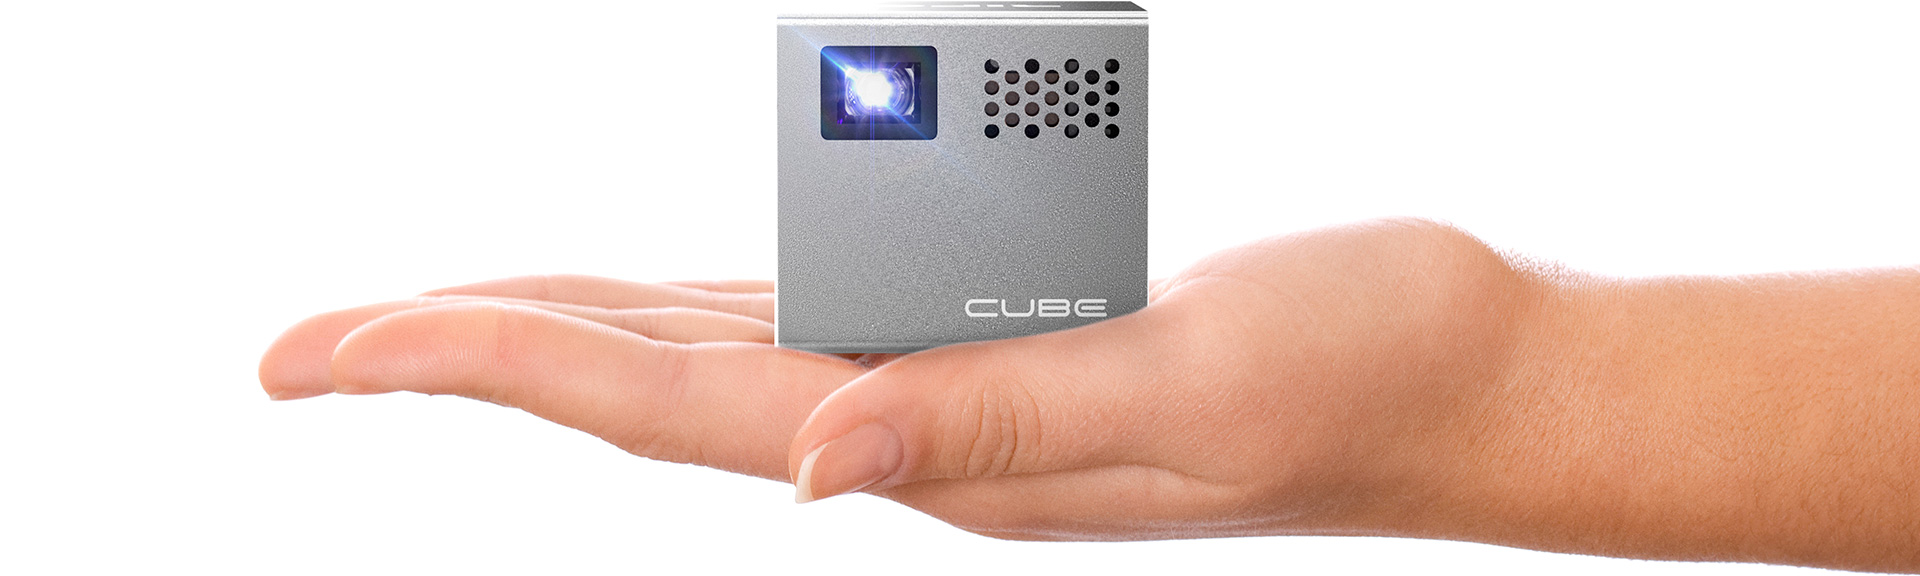 Best mini projectors. RIF6 Cube